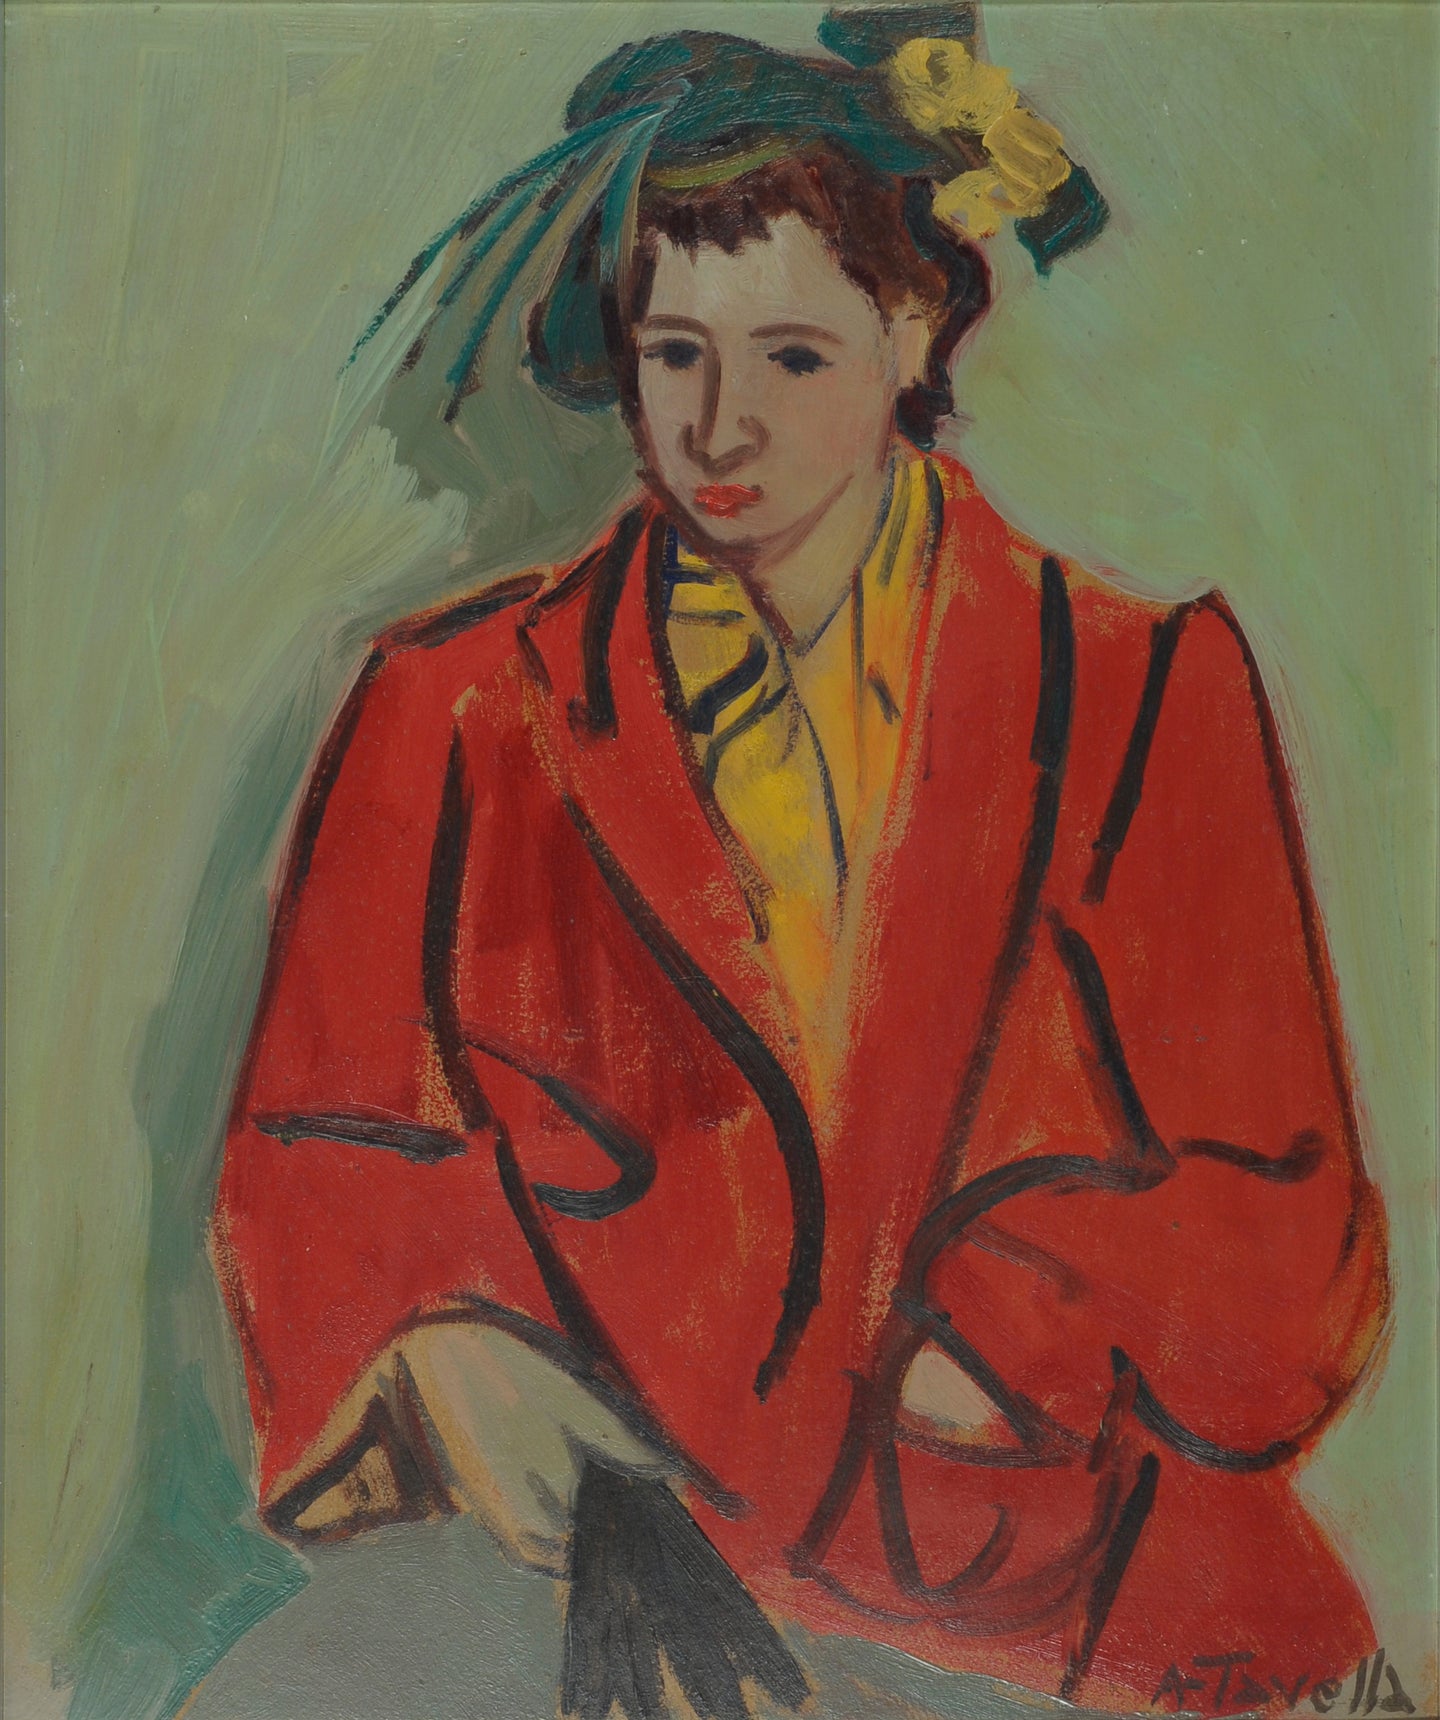 Aldo Tavella, Il Giubbetto Rosso, 1953